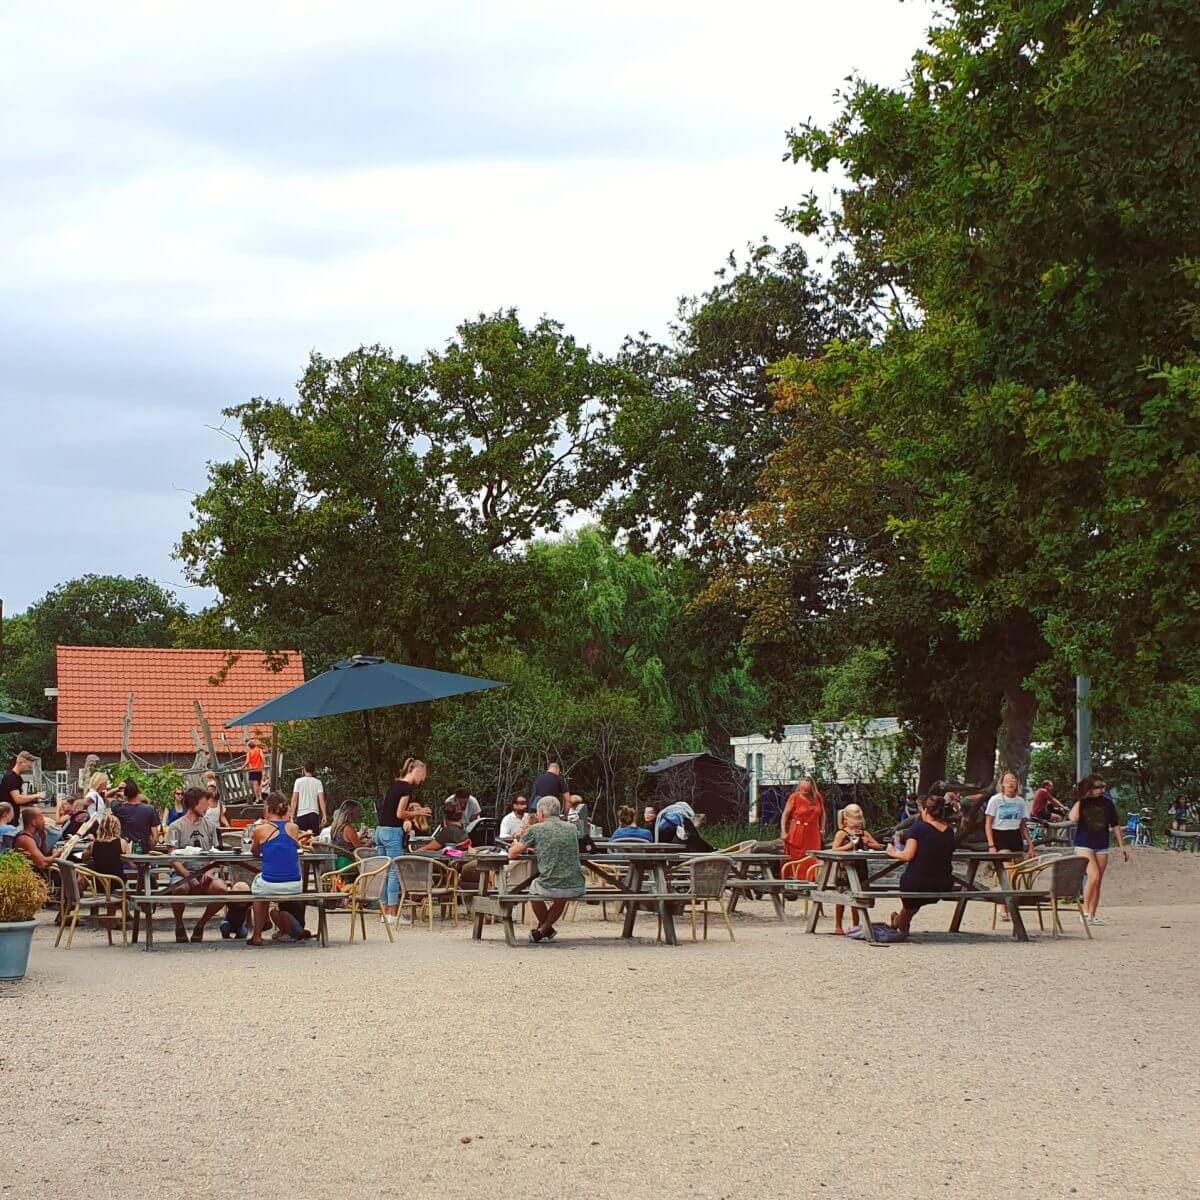 het dorpsplein van camping bakkum